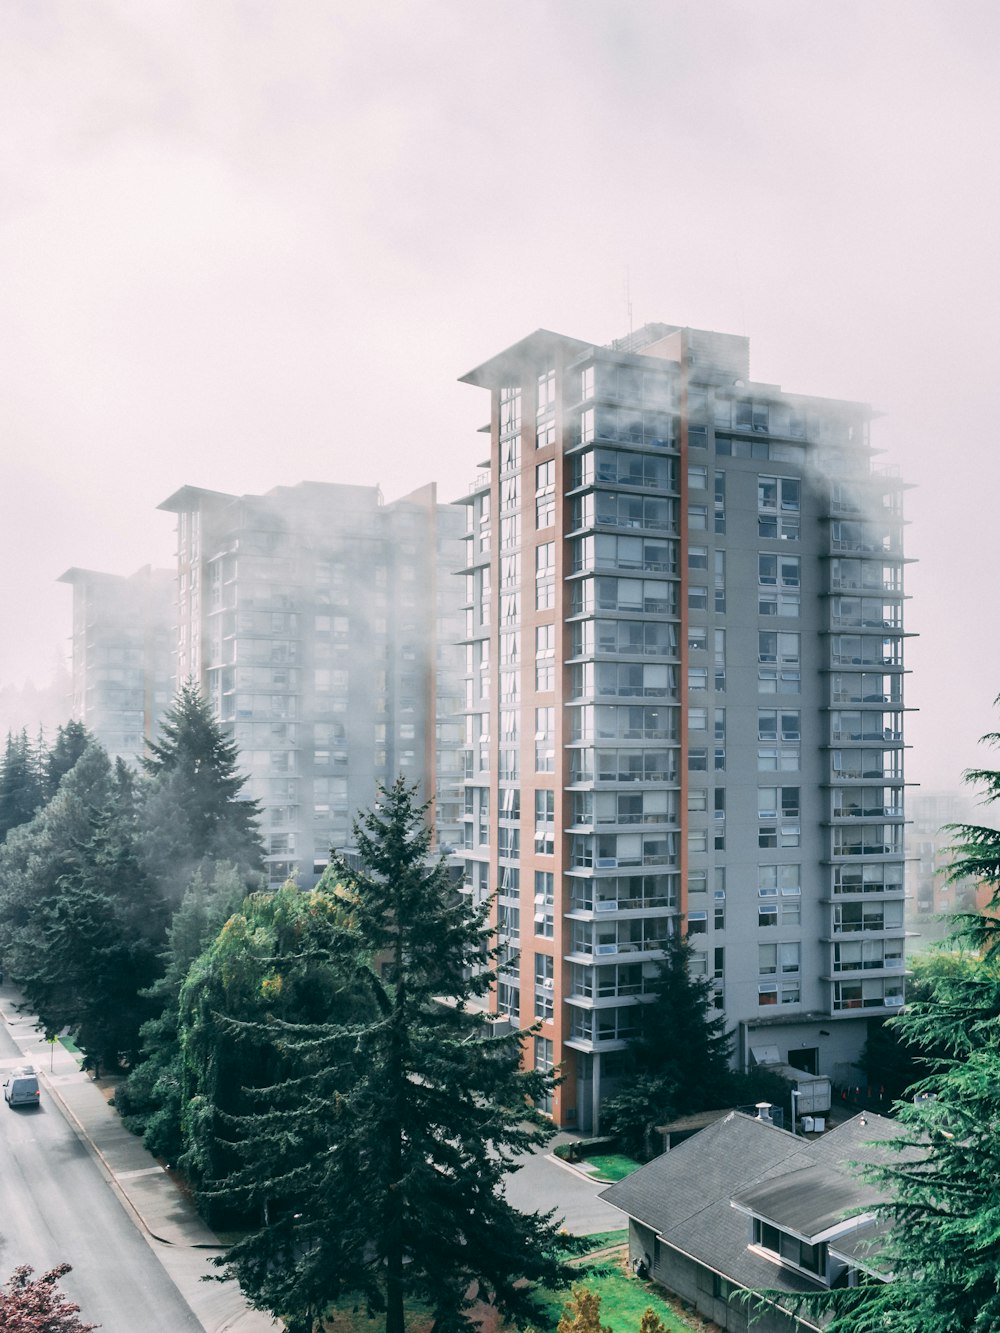 Graues und braunes Gebäude bei nebligem Wetter während des Tages